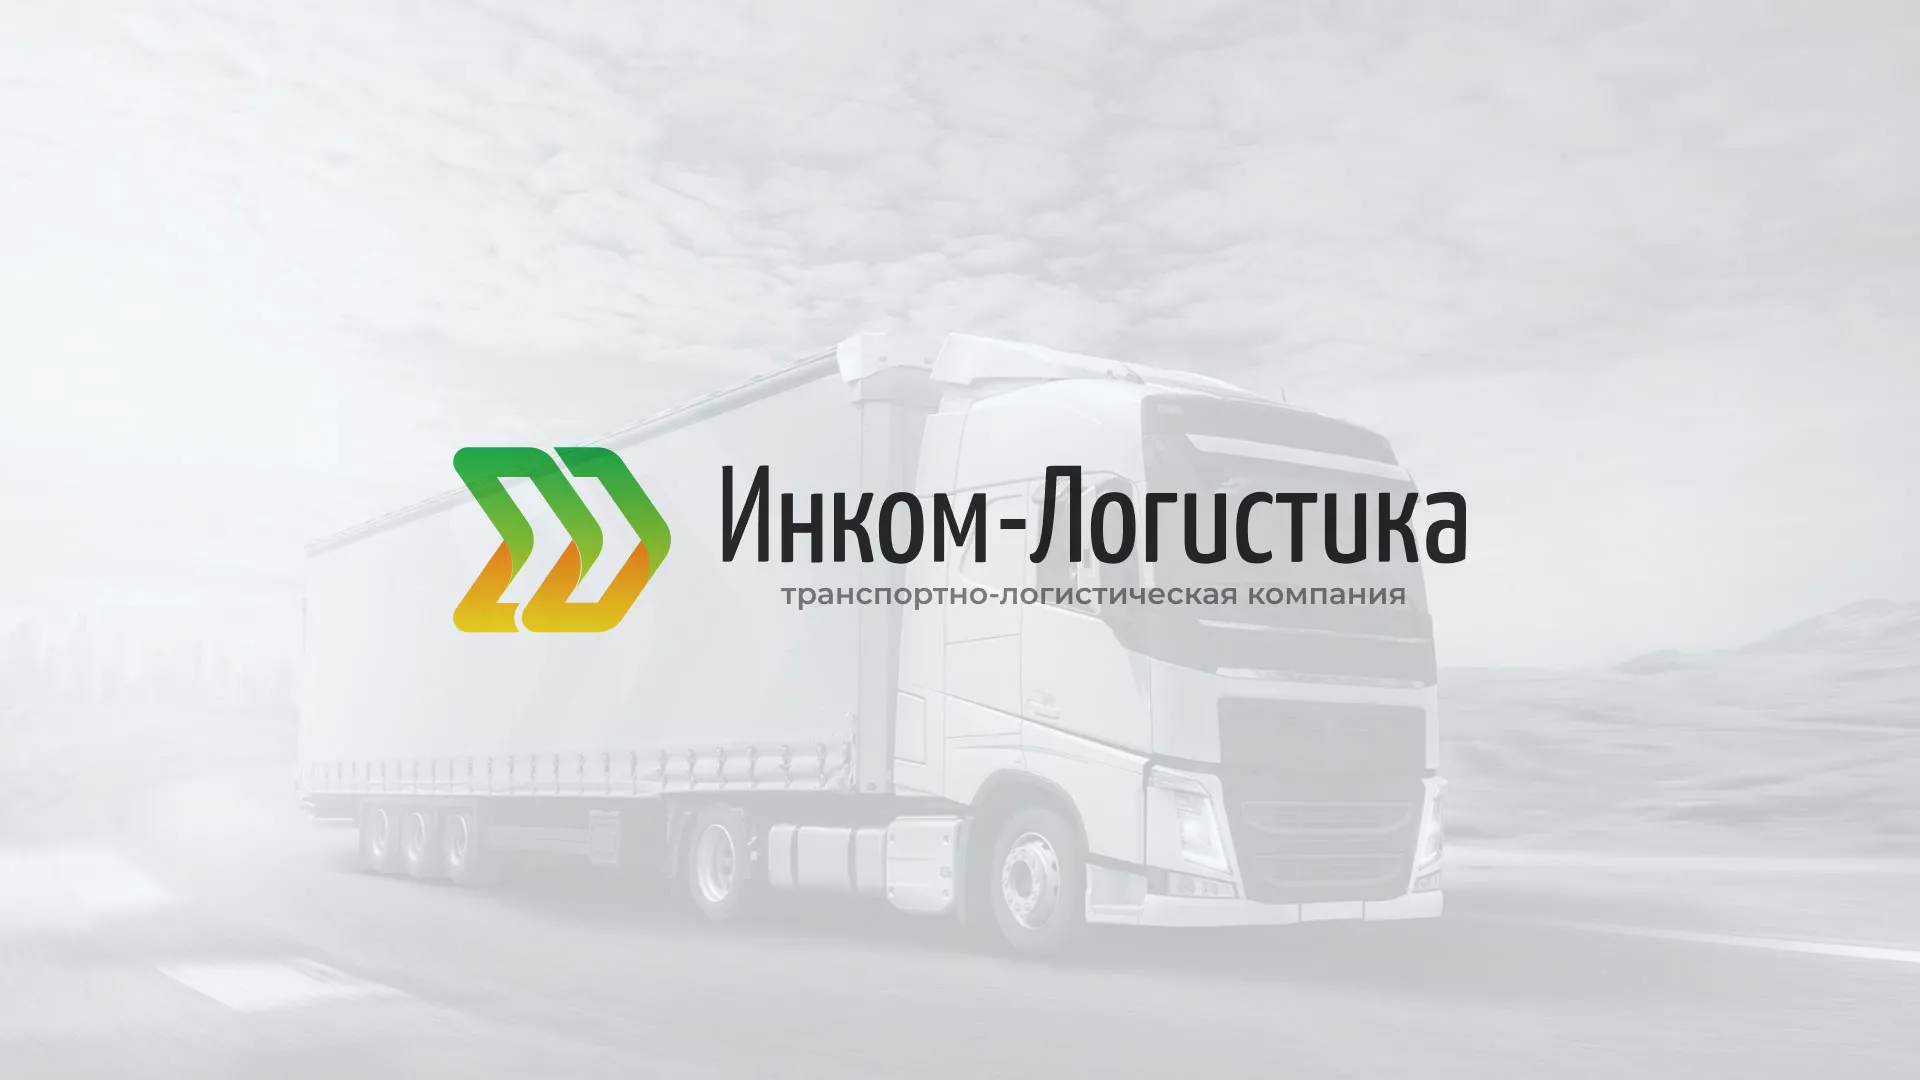 Разработка логотипа и сайта компании «Инком-Логистика» в Смоленске